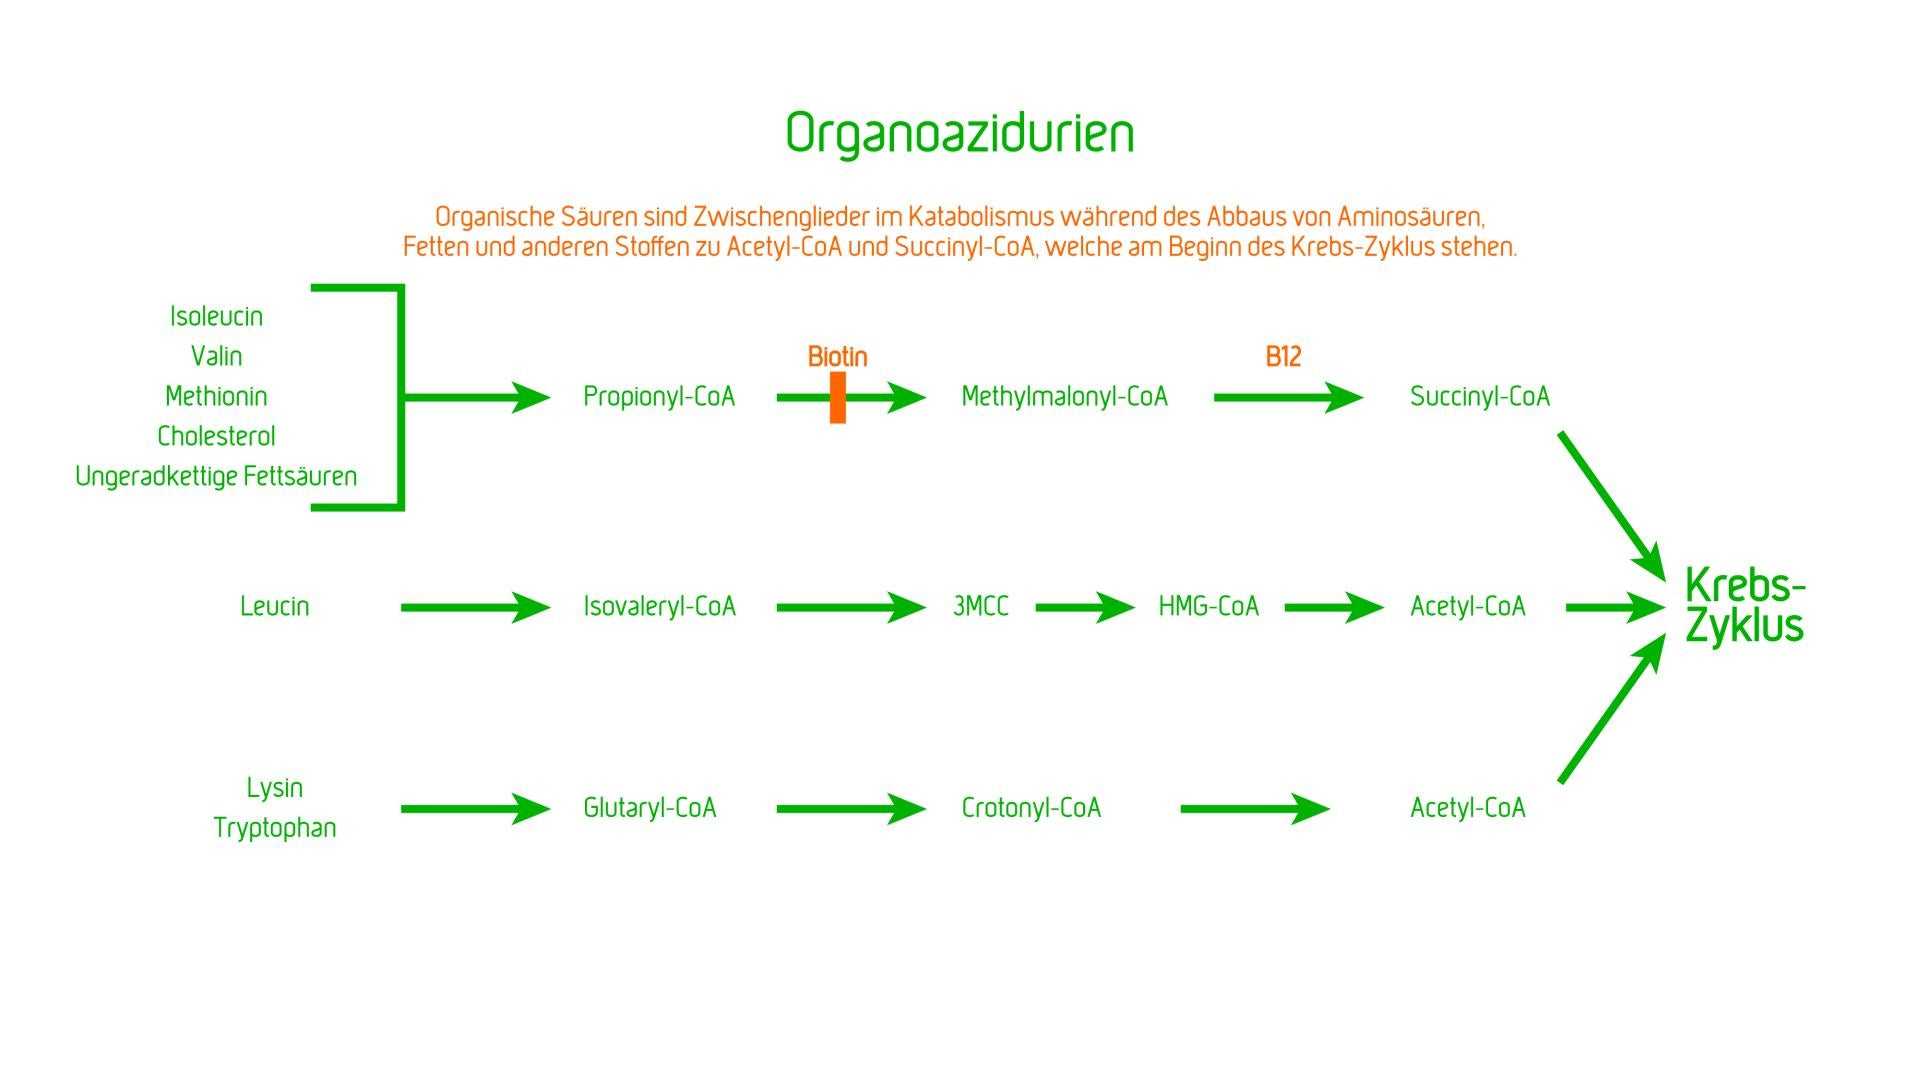 Organoazidopathien (Organoazidurien)